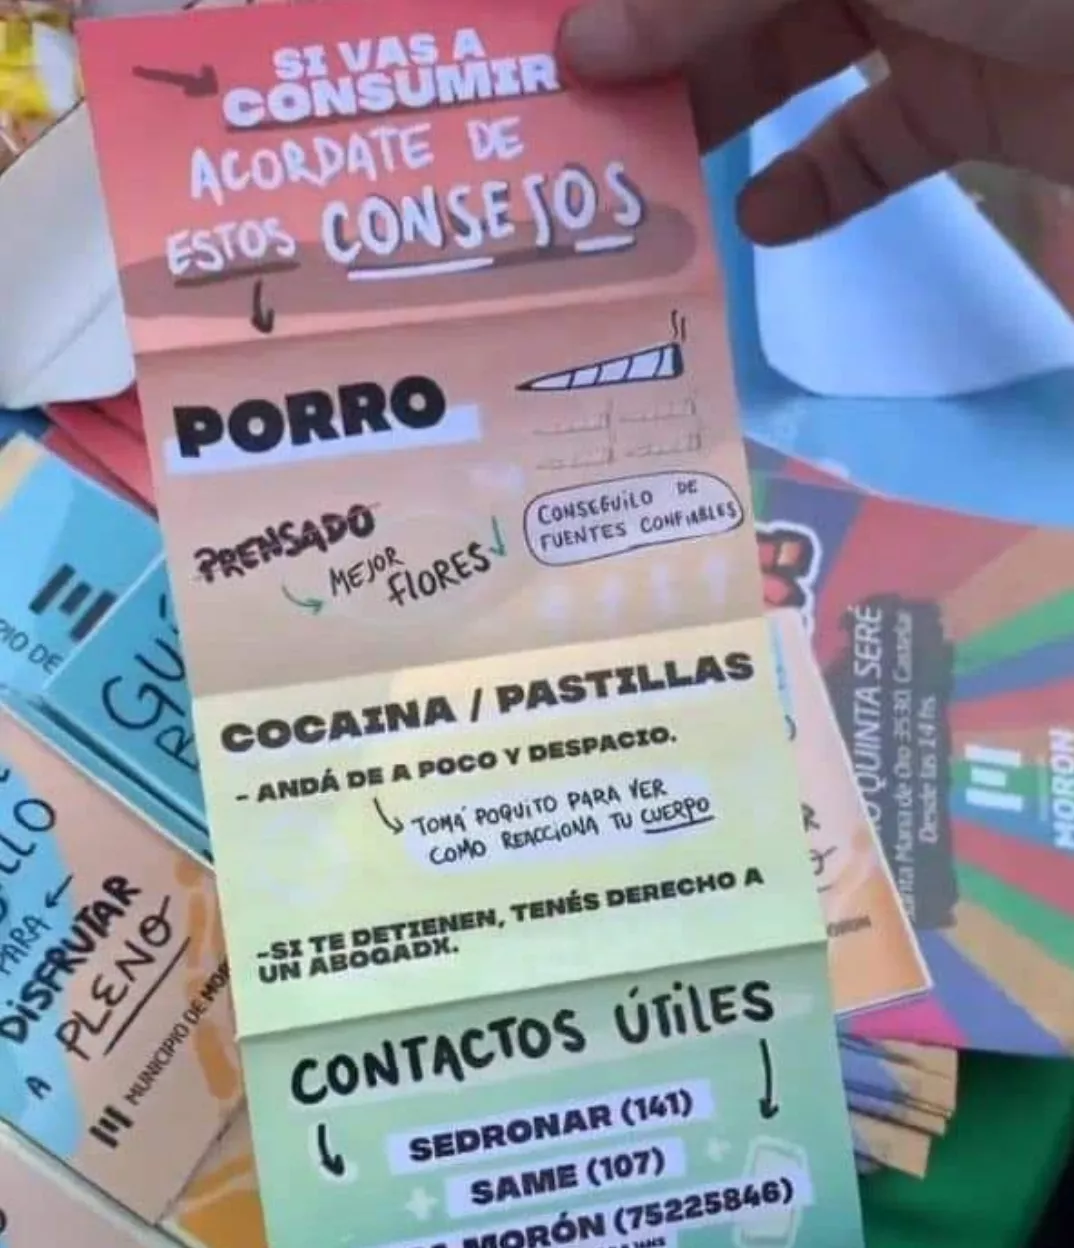 Fuerte polémica y críticas por folletos sobre el consumo de drogas que difundió la Municipalidad de Morón